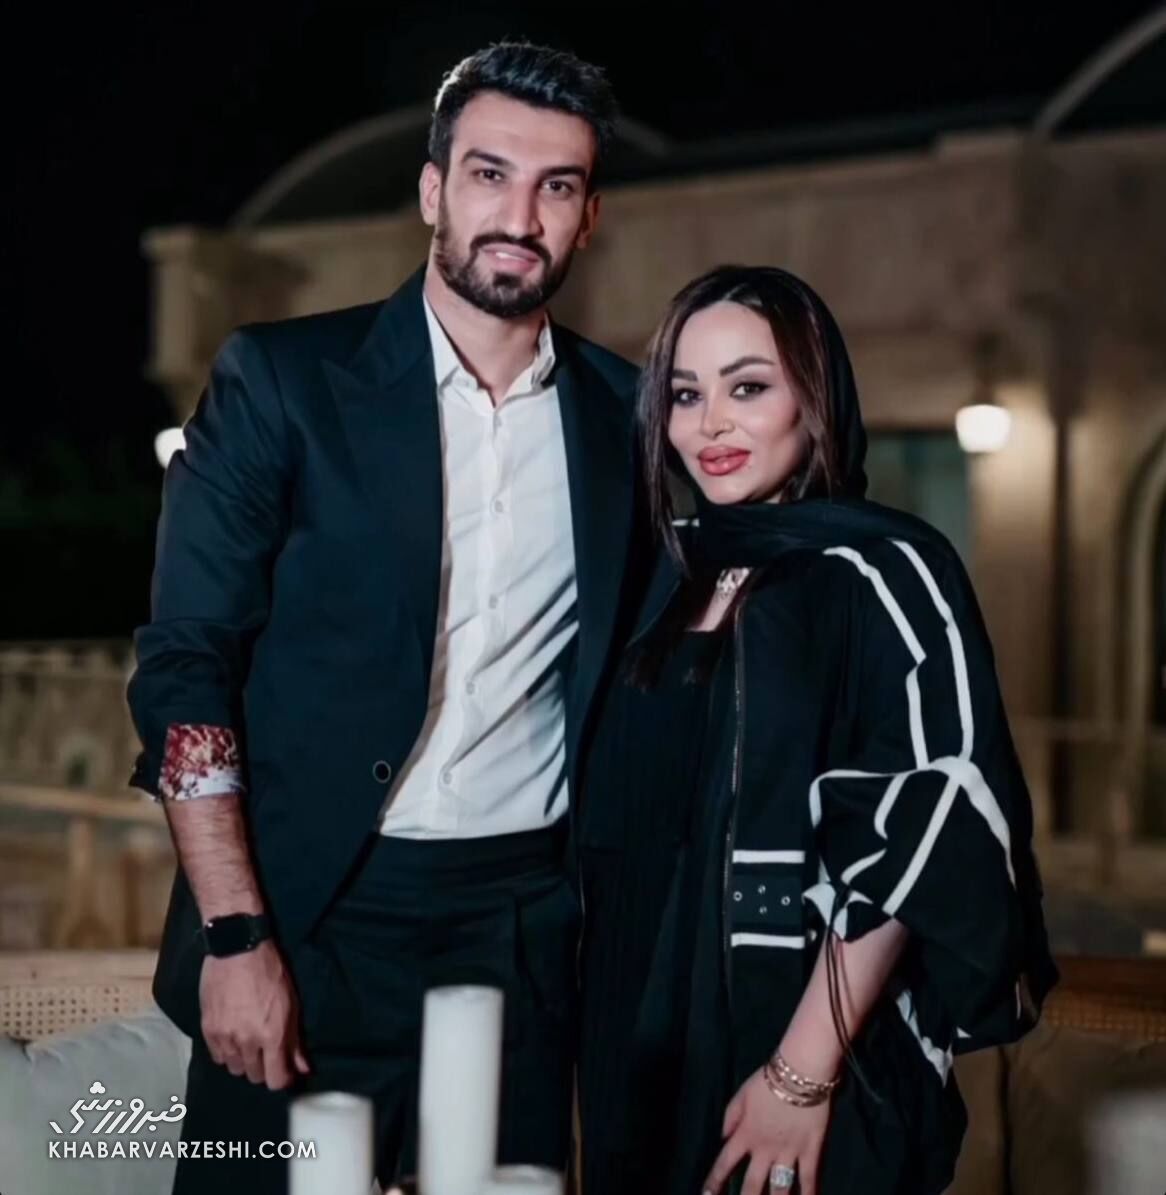 حسین ماهینی و همسرش در مراسم تولد خواننده معروف